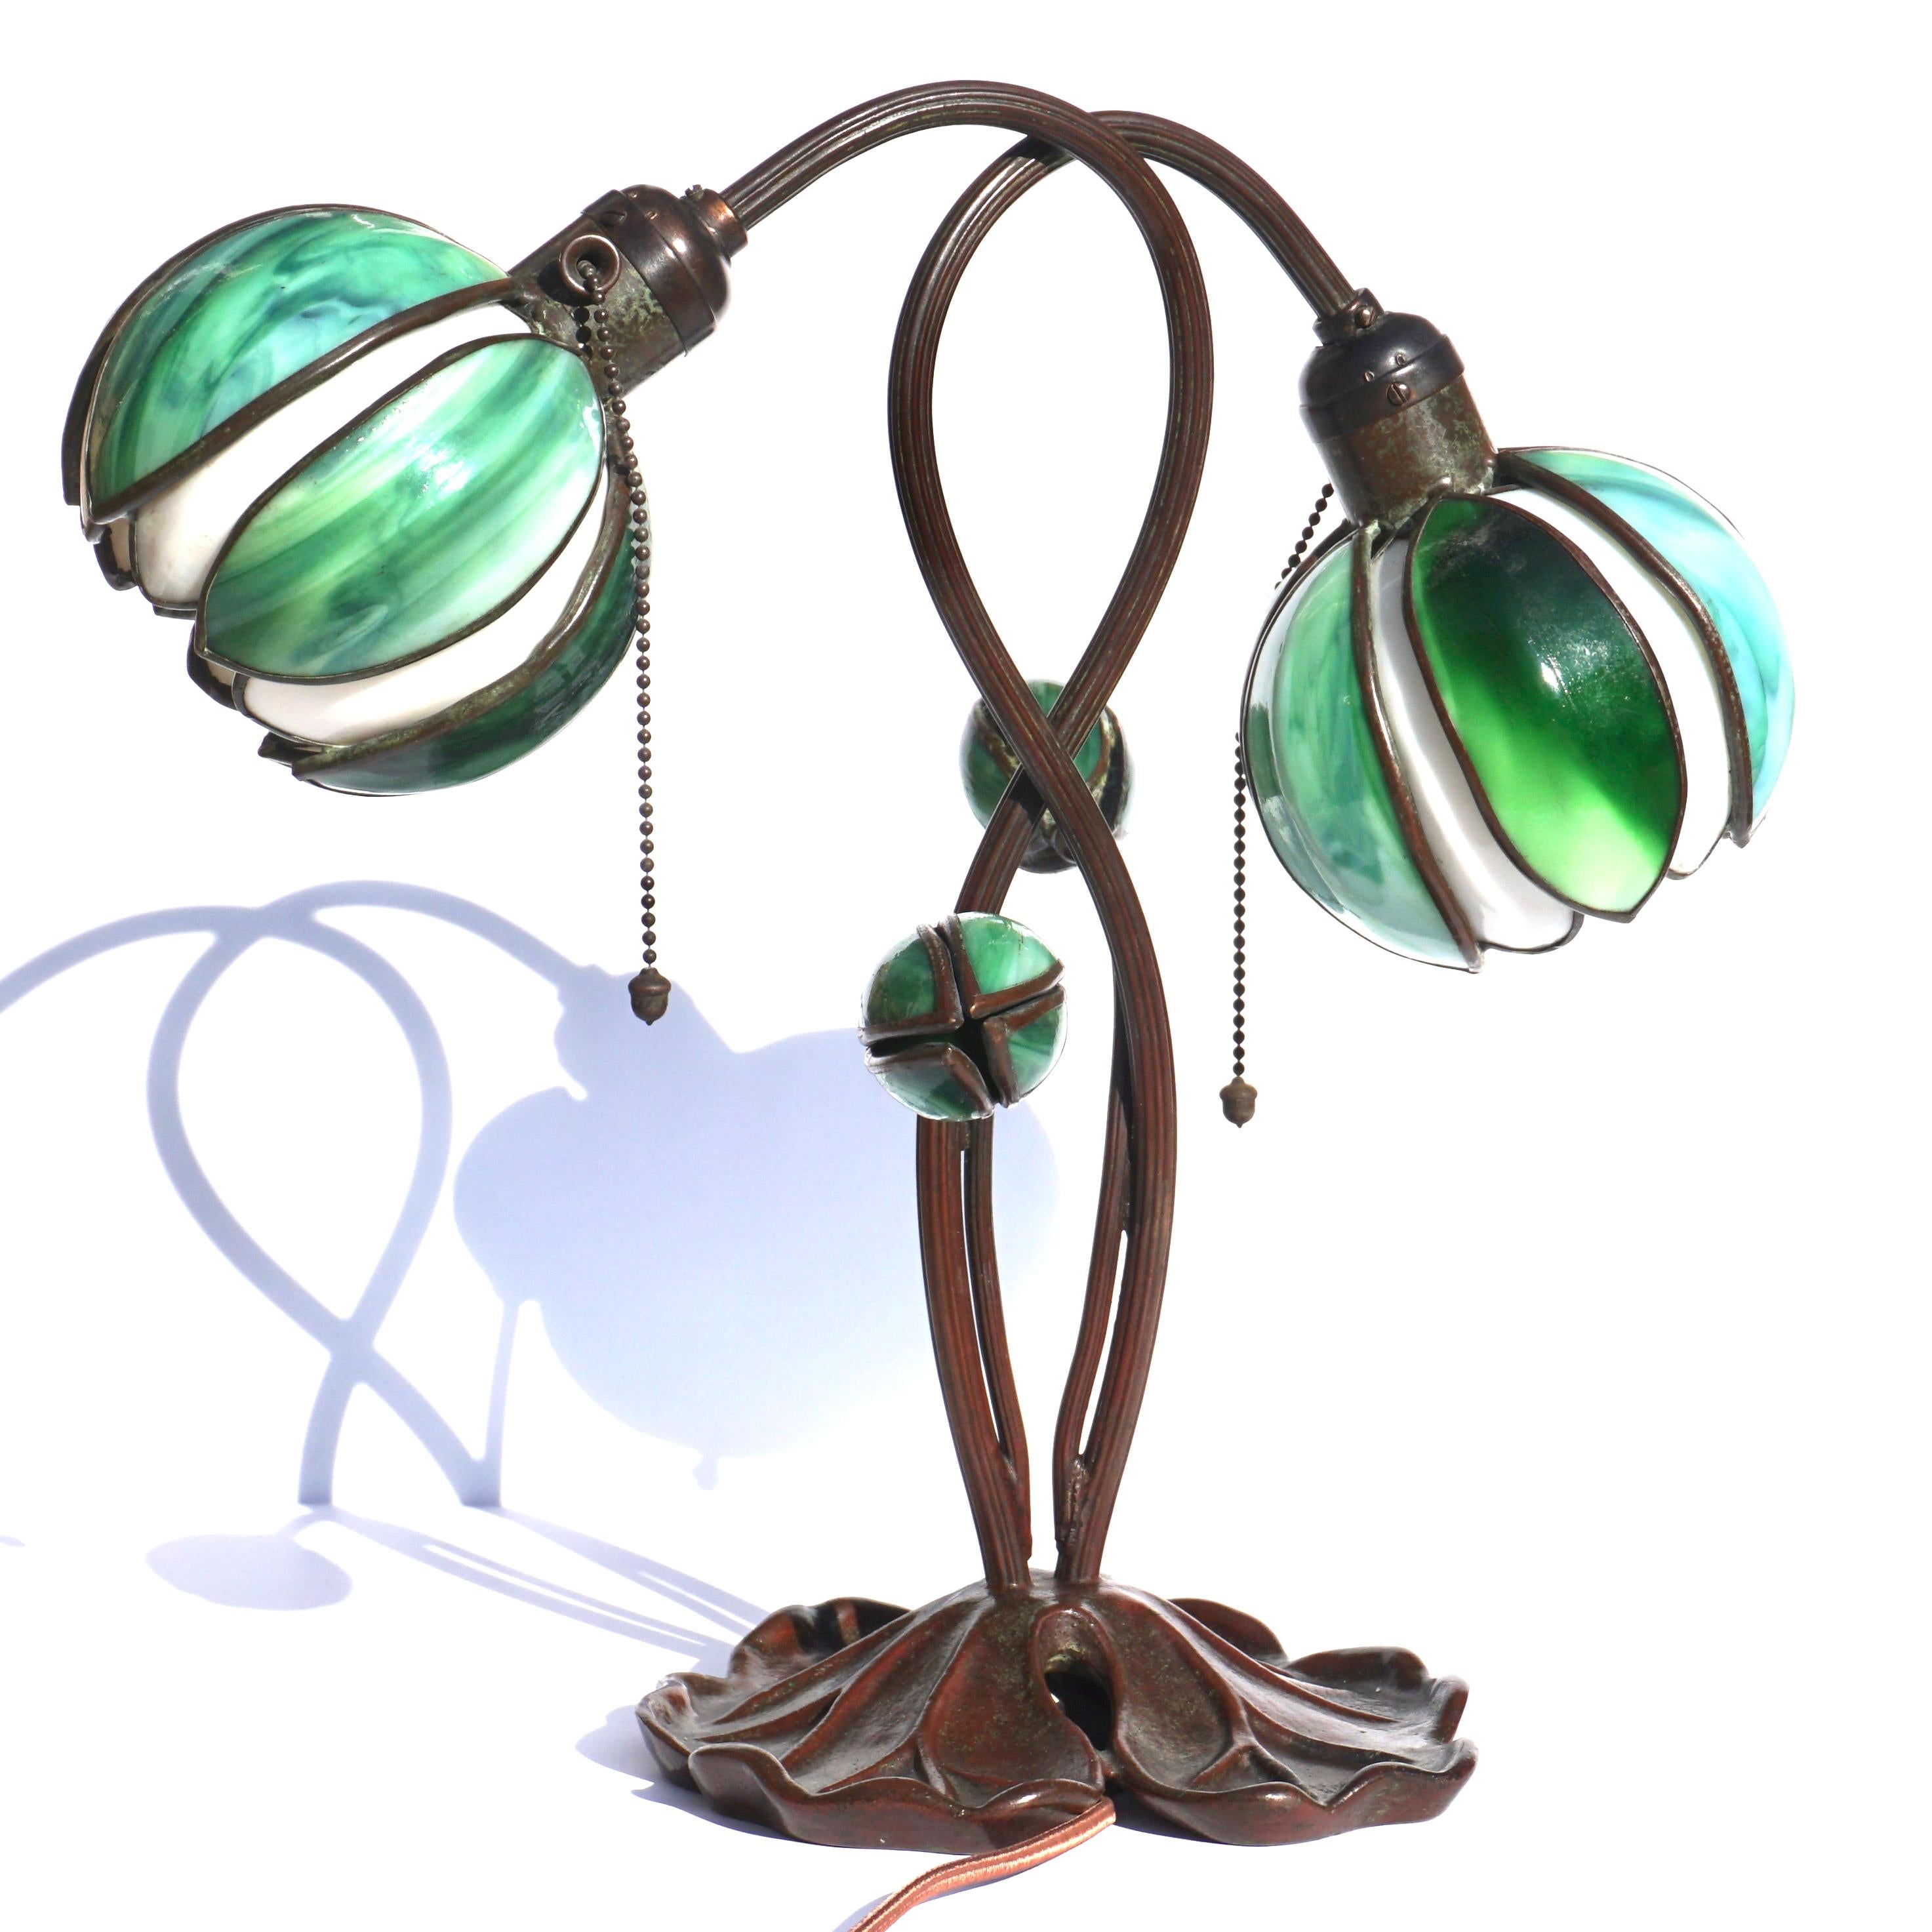 Handel Art Nouveau Zwei Licht Lily Tischlampe.

Eine schöne zweiflammige Seerosenlampe von Händel aus dem frühen 20. Die beiden Seerosenschirme bestehen aus weißen und grünen Schlackenglasblättern. Die Lampe ist außerdem mit zwei Blütenknospen aus